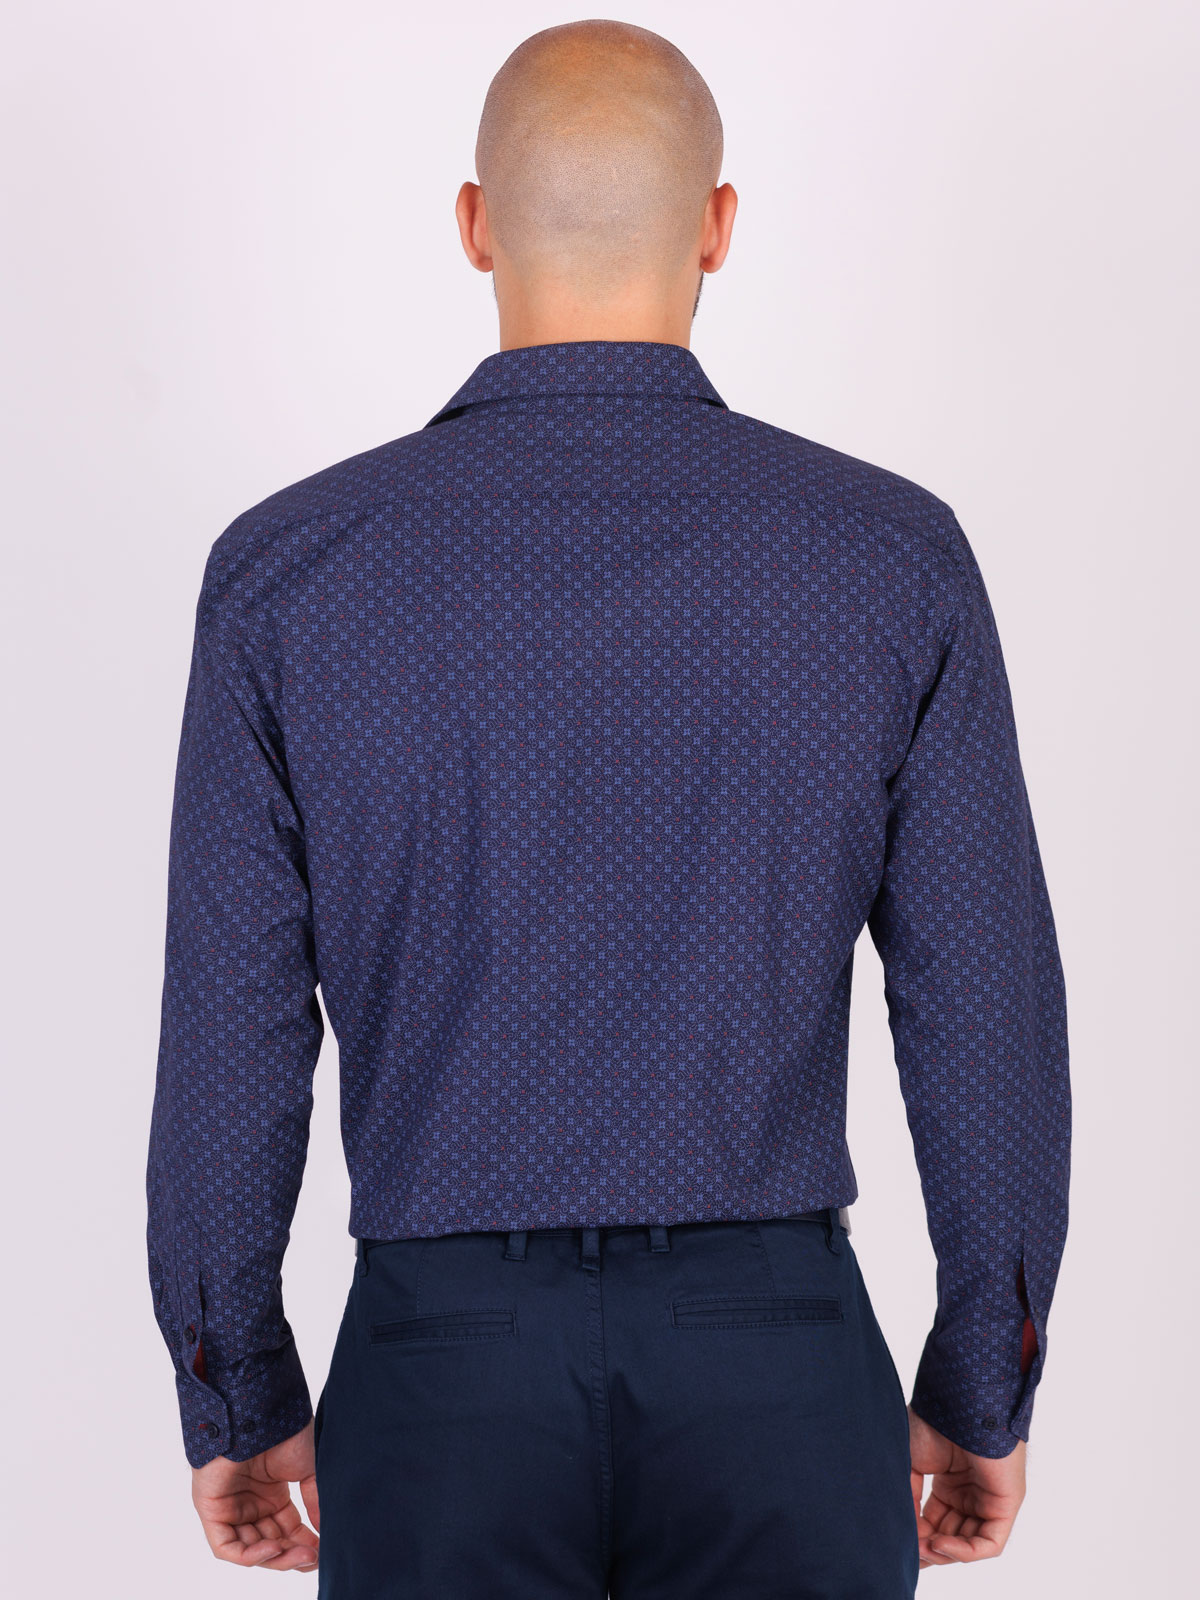 Ανδρικό πουκάμισο με μπορντώ σχέδια - 21553 € 44.43 img2